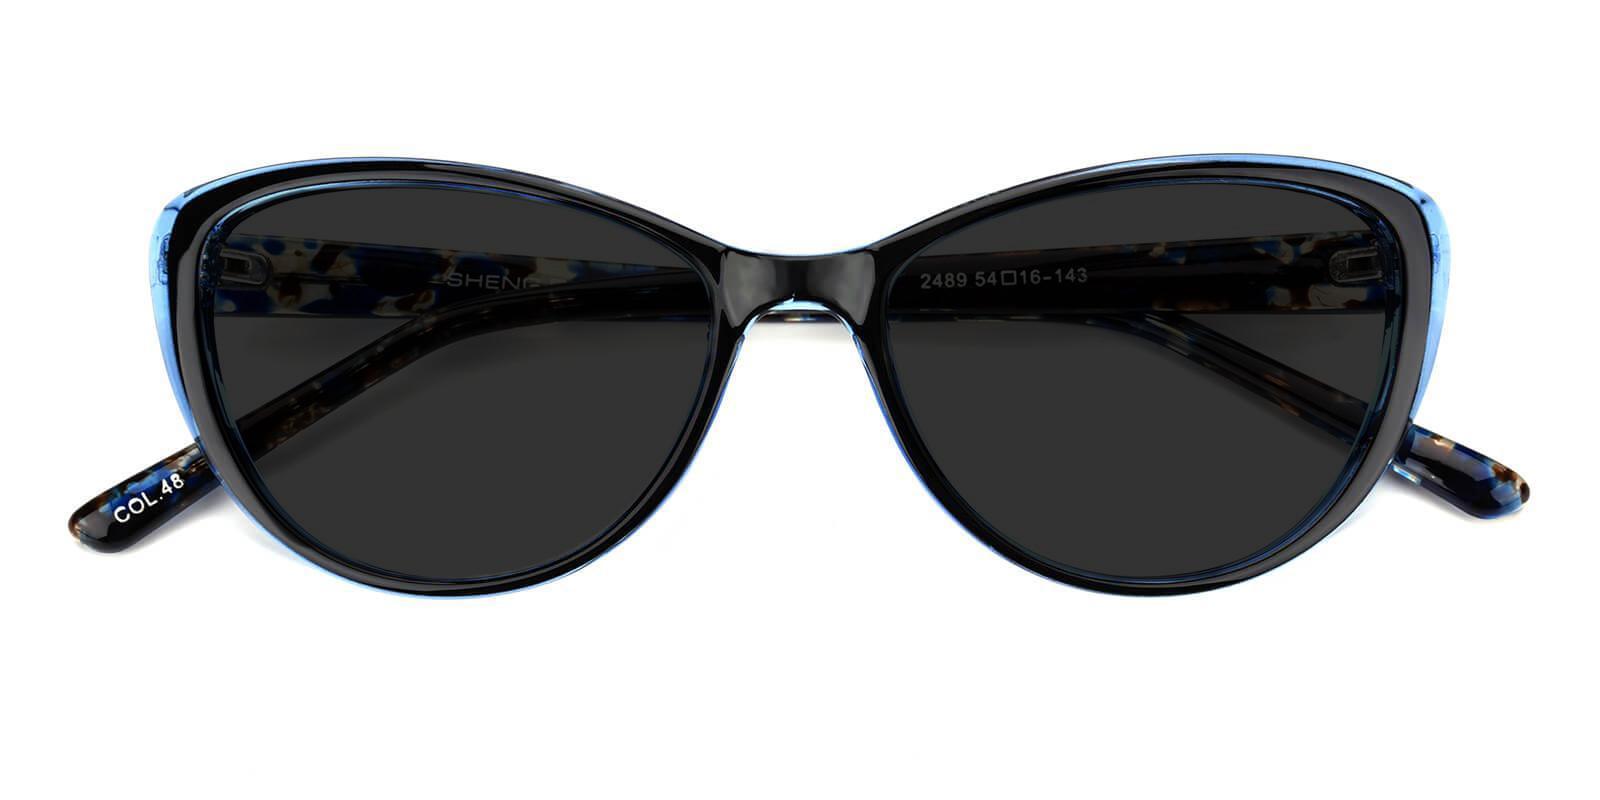 Morla Blue Plastic Sunglasses , UniversalBridgeFit Frames from ABBE Glasses